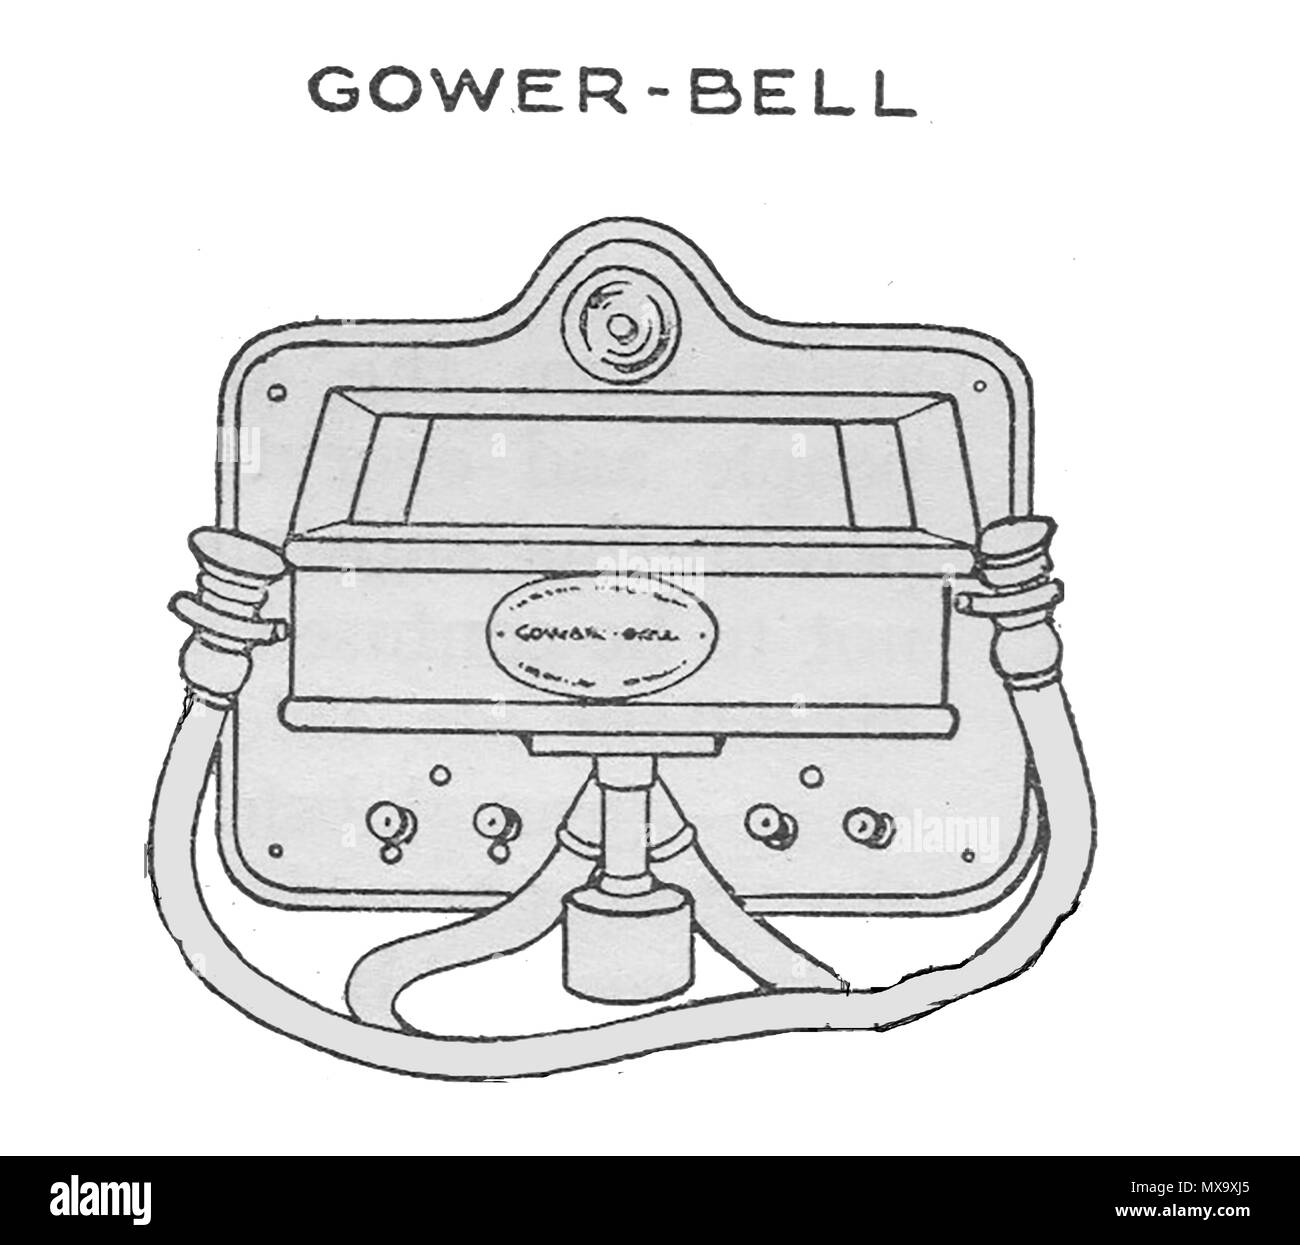 Primi apparecchi telefonici - Un 1930 Illustrazione di un Gower-Bell dispositivo telefonico. Foto Stock